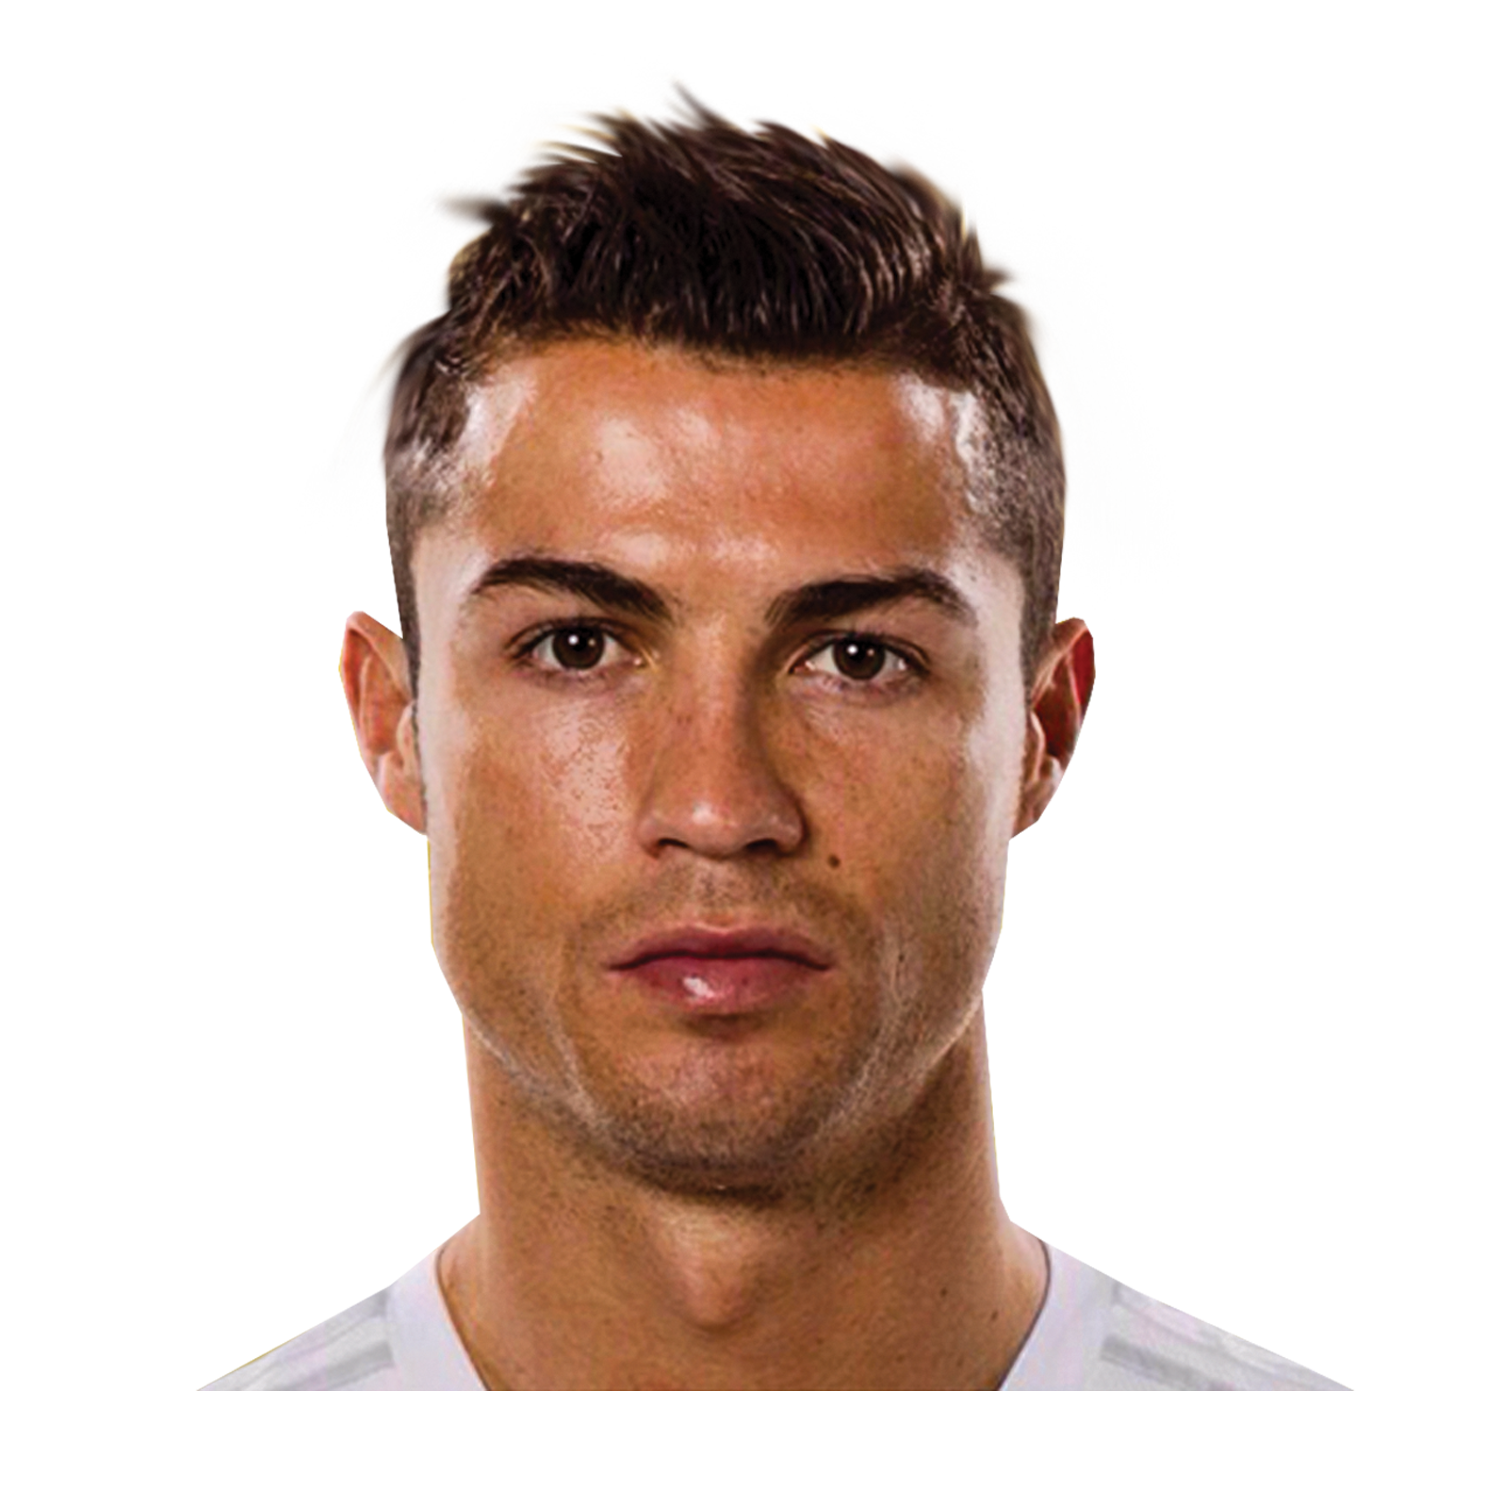 Real League Cristiano Portugal Madrid Ronaldo Football Clipart